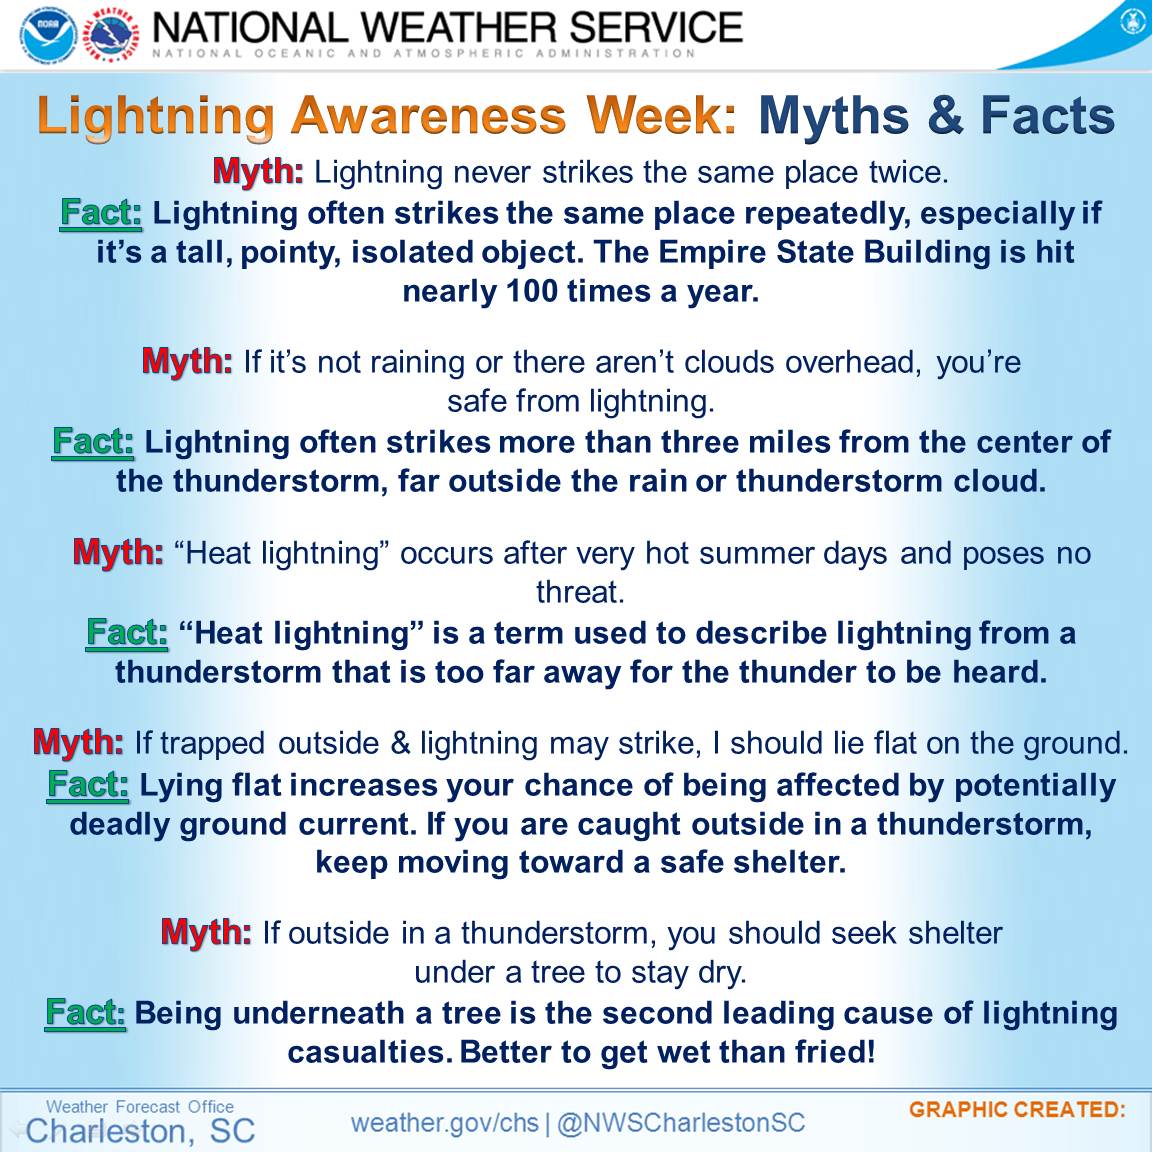 Lightning Safety Awareness Week1152 x 1152